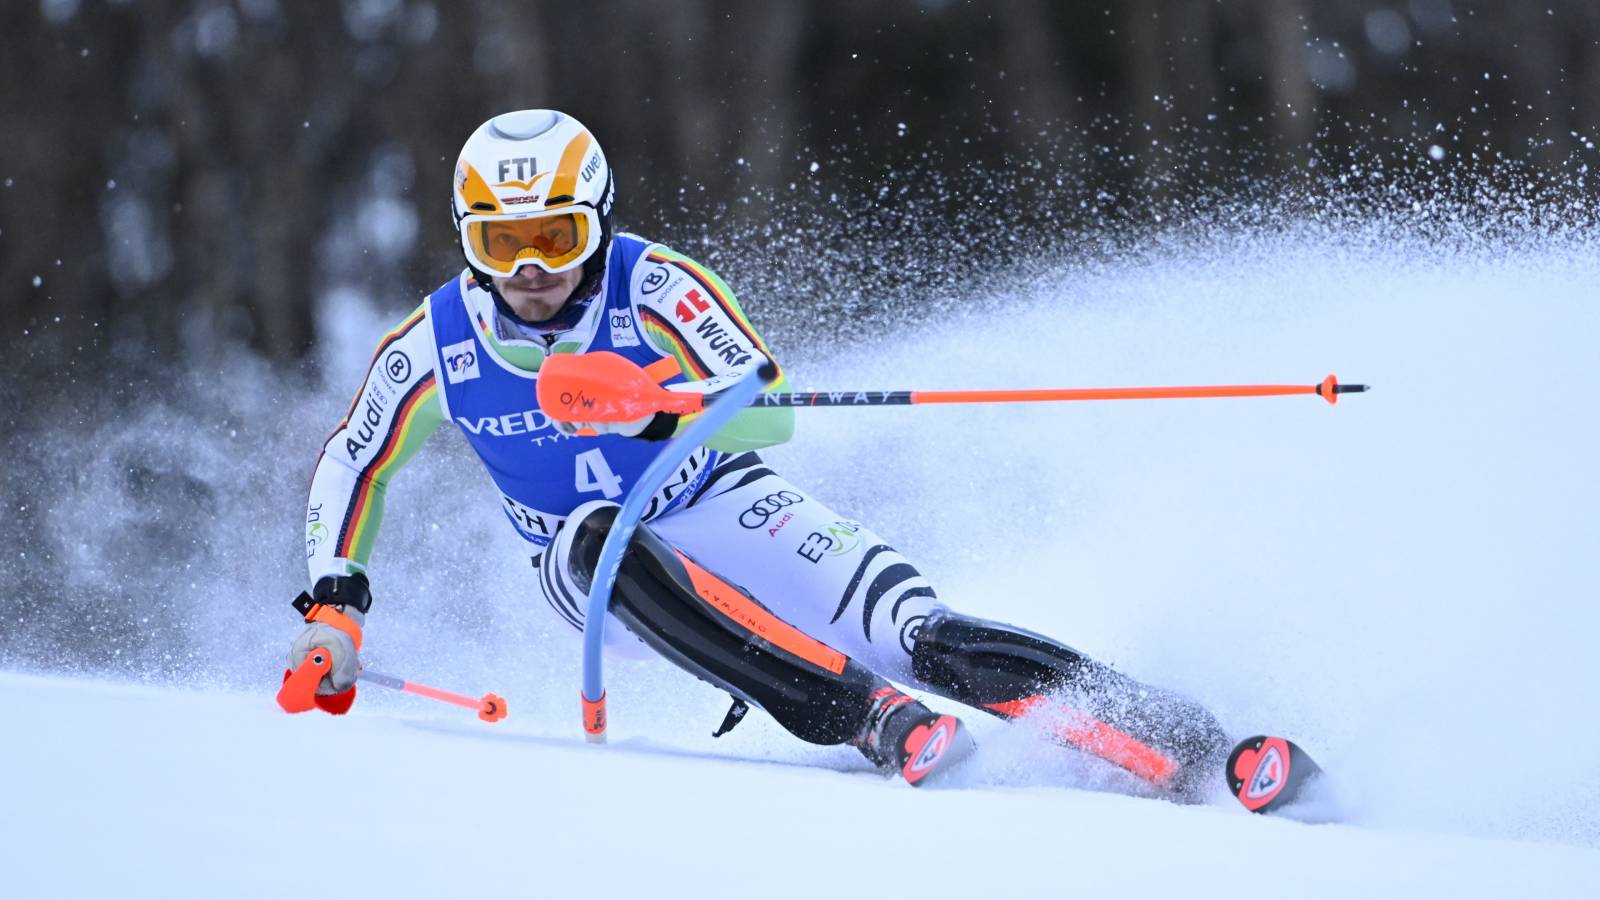 ski alpin: ski alpin heute live im free-tv: wer zeigt / überträgt slalom der herren in bansko und frauen in soldeu im tv und livestream?